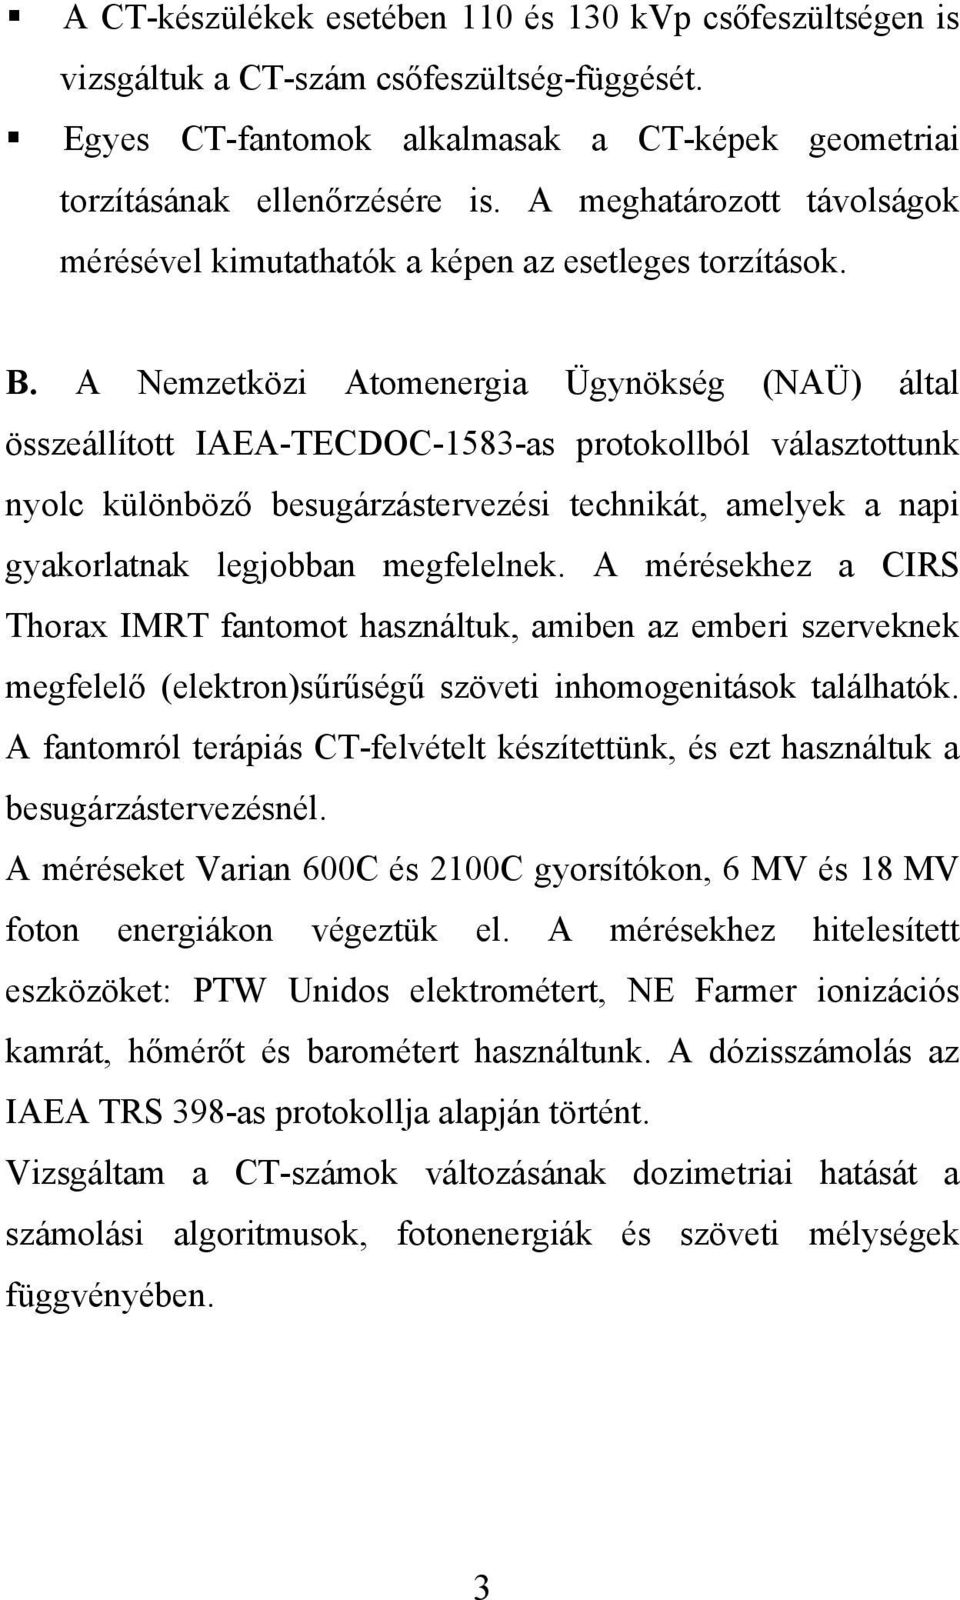 A Nemzetközi Atomenergia Ügynökség (NAÜ) által összeállított IAEA-TECDOC-1583-as protokollból választottunk nyolc különböző besugárzástervezési technikát, amelyek a napi gyakorlatnak legjobban